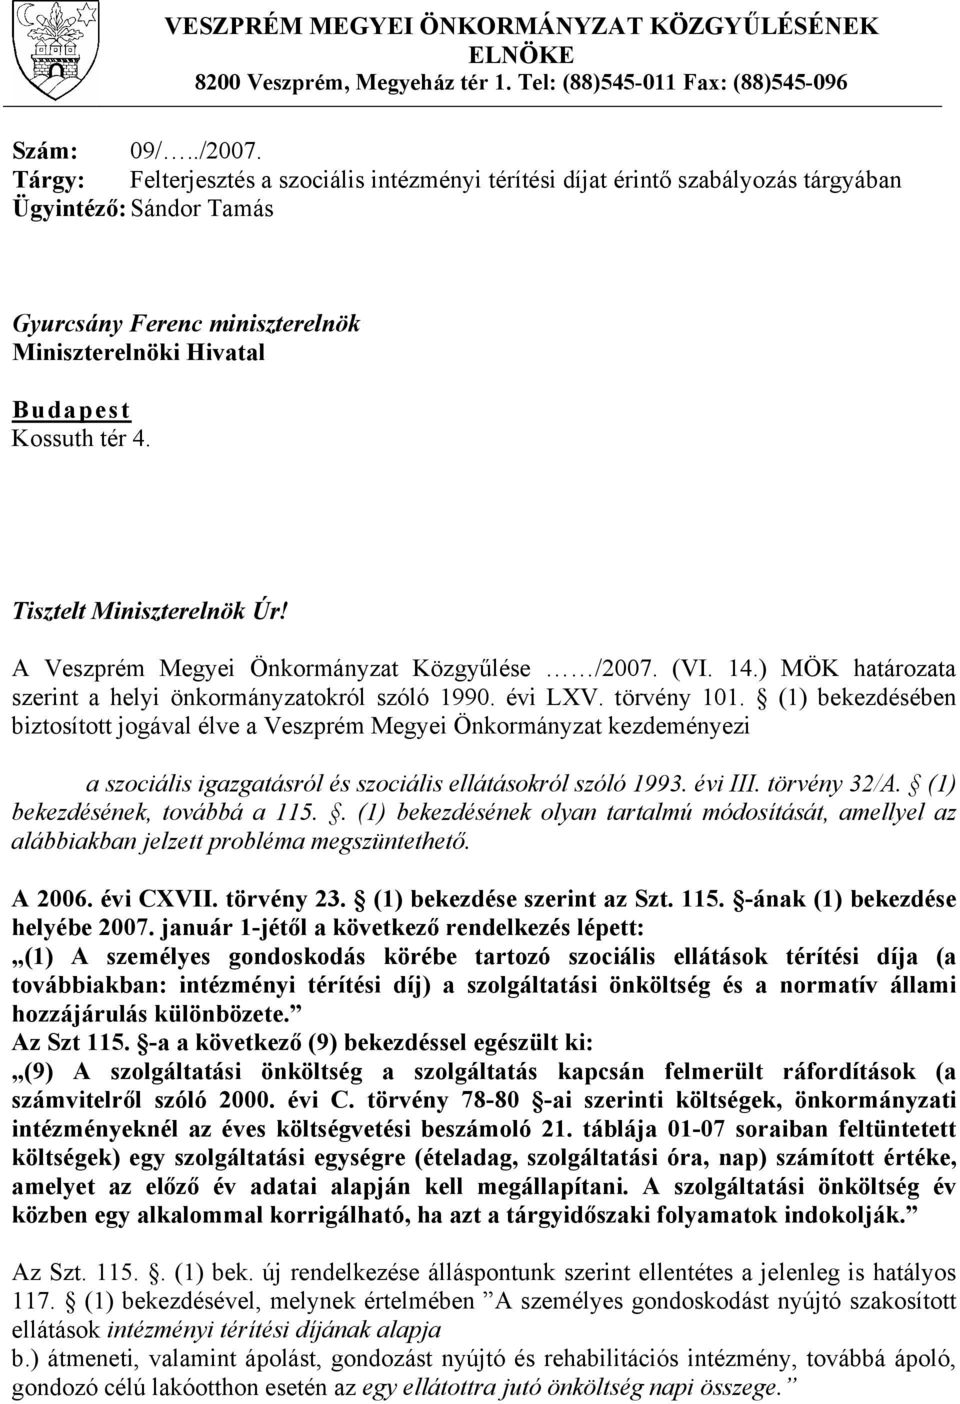 Tisztelt Miniszterelnök Úr! A Veszprém Megyei Önkormányzat Közgyűlése /2007. (VI. 14.) MÖK határozata szerint a helyi önkormányzatokról szóló 1990. évi LXV. törvény 101.